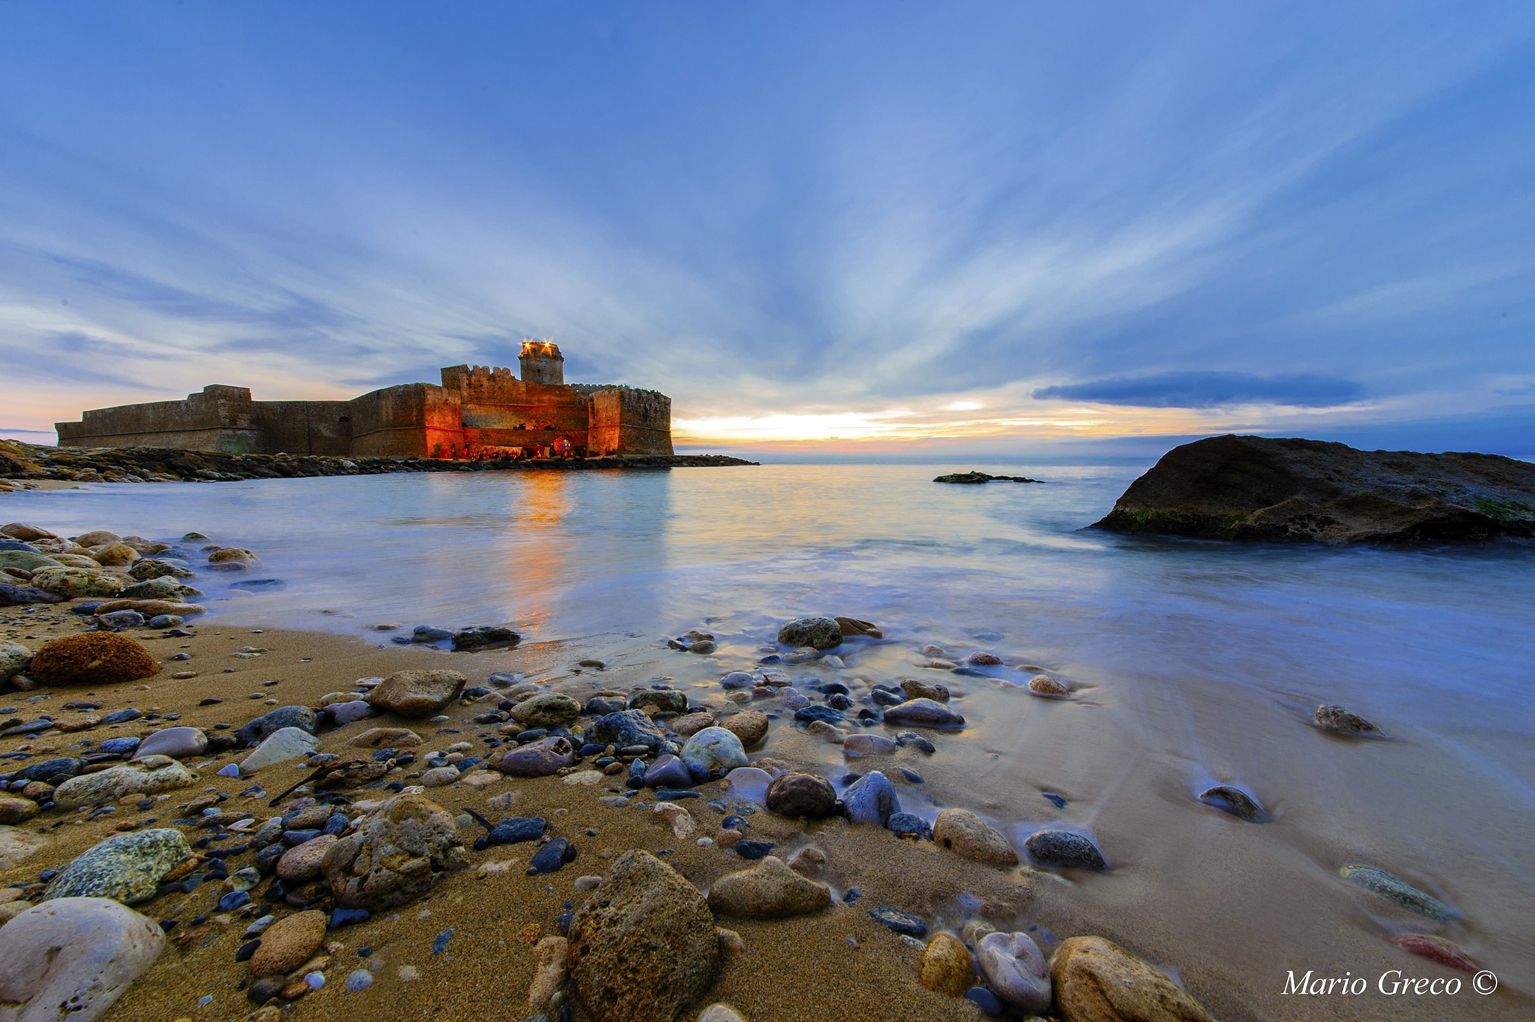 La fortezza aragonese a Le Castella di Isola Capo Rizzuto (Crotone) fotografata da Mario Greco